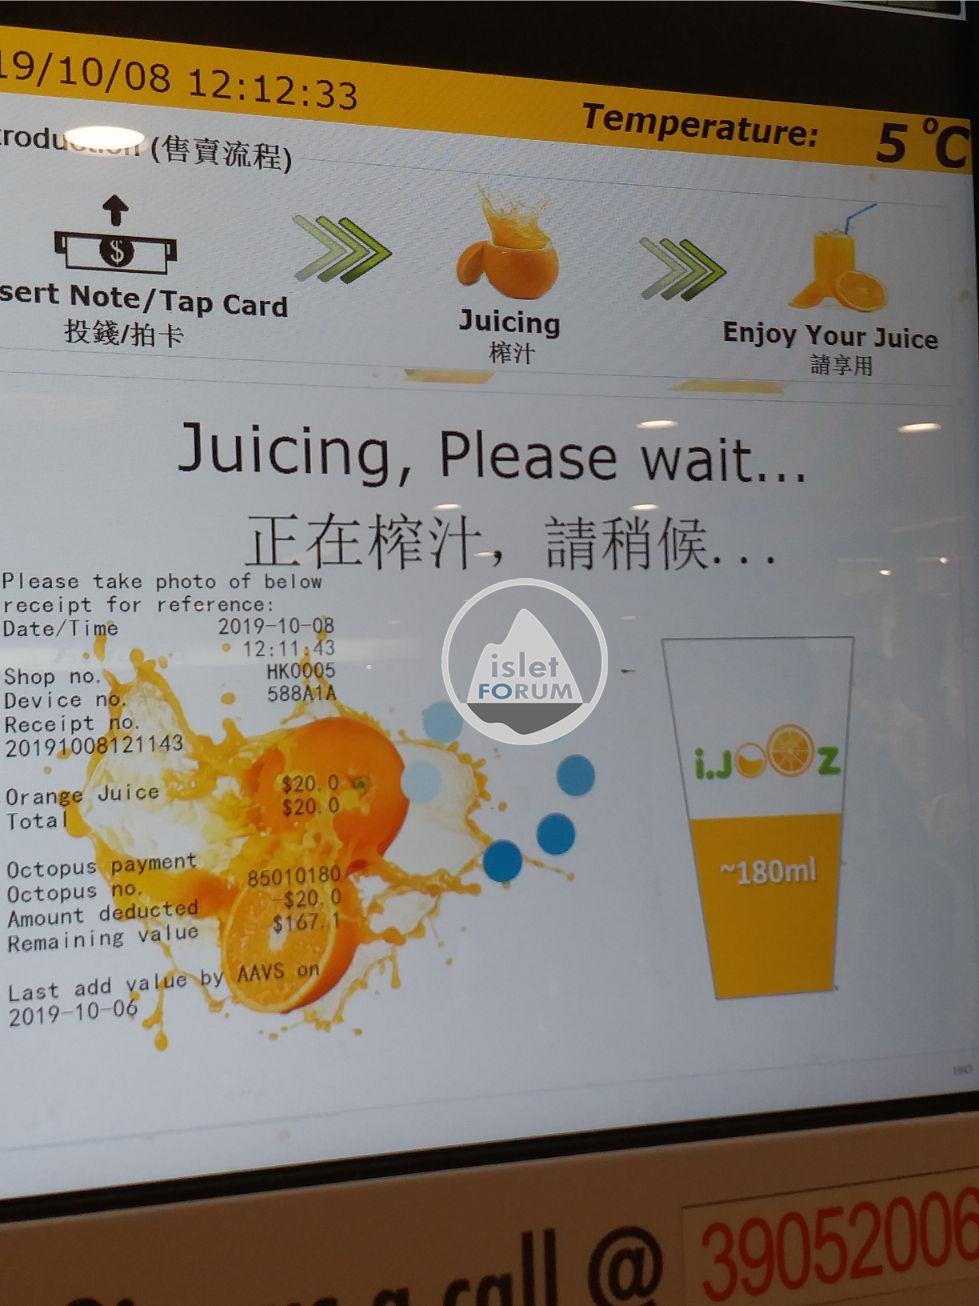 IJOOZ Vending Machine 鮮橙汁售賣機 (5).jpg